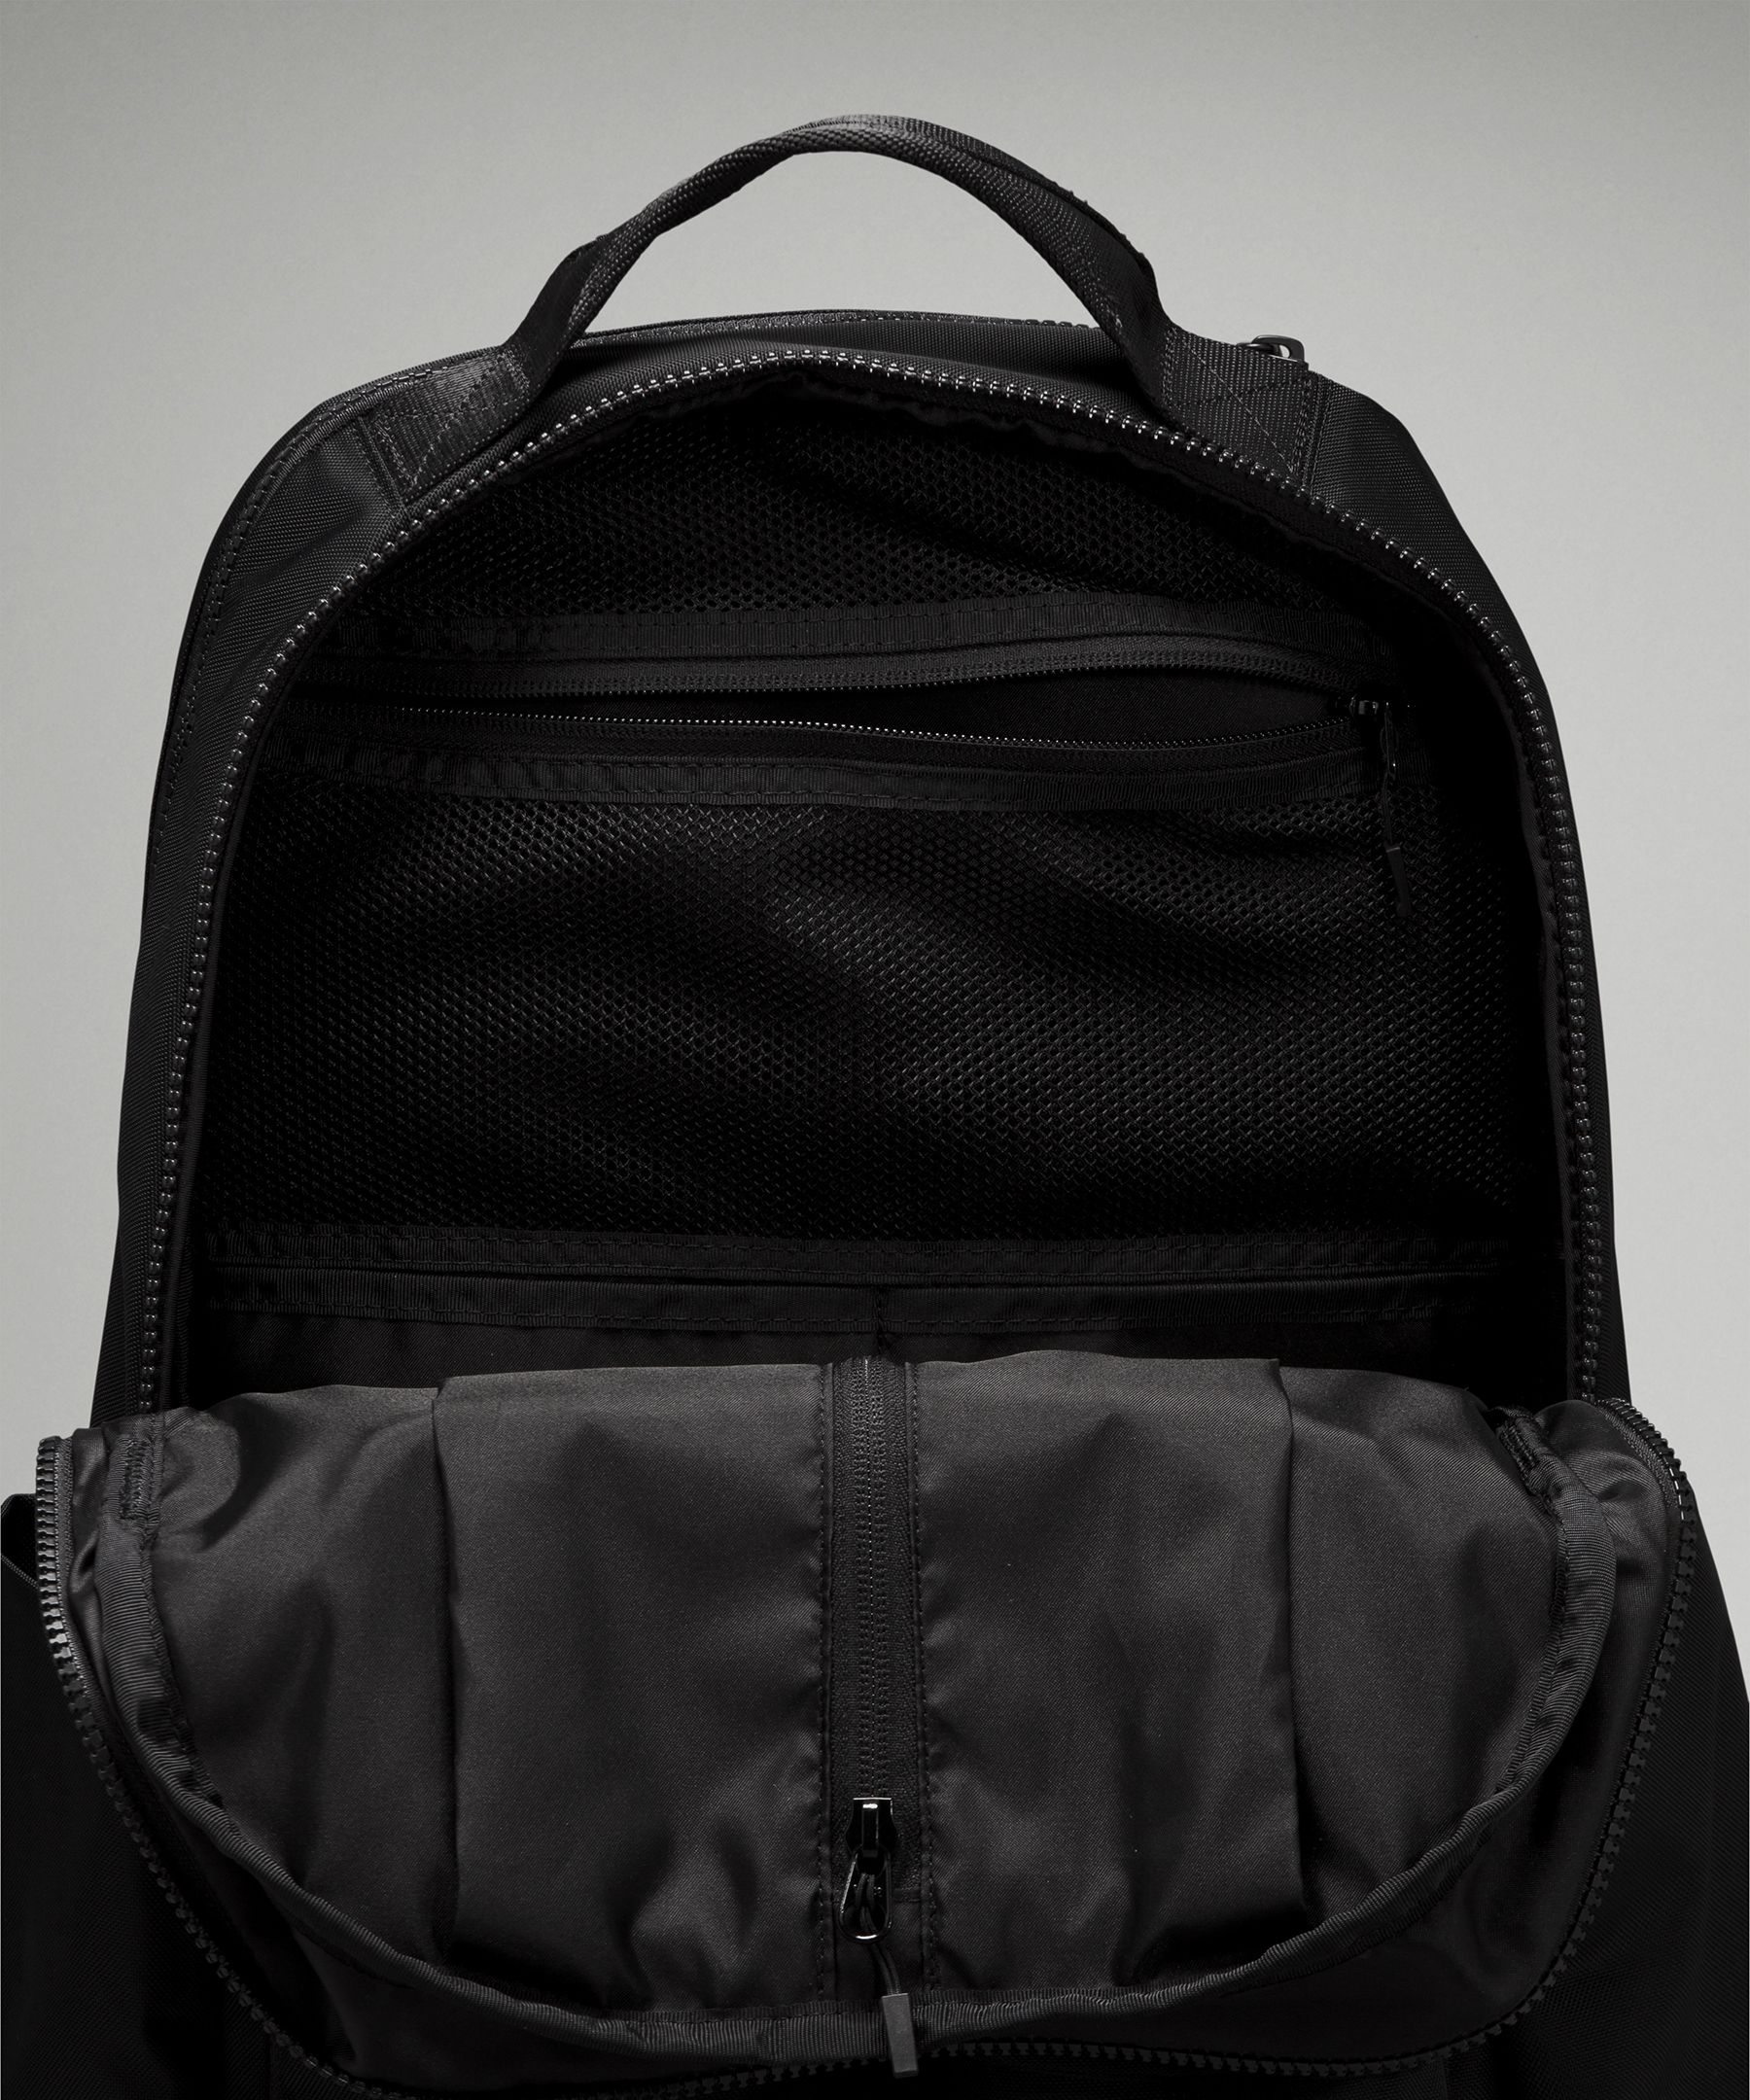 lululemon cruiser backpack review